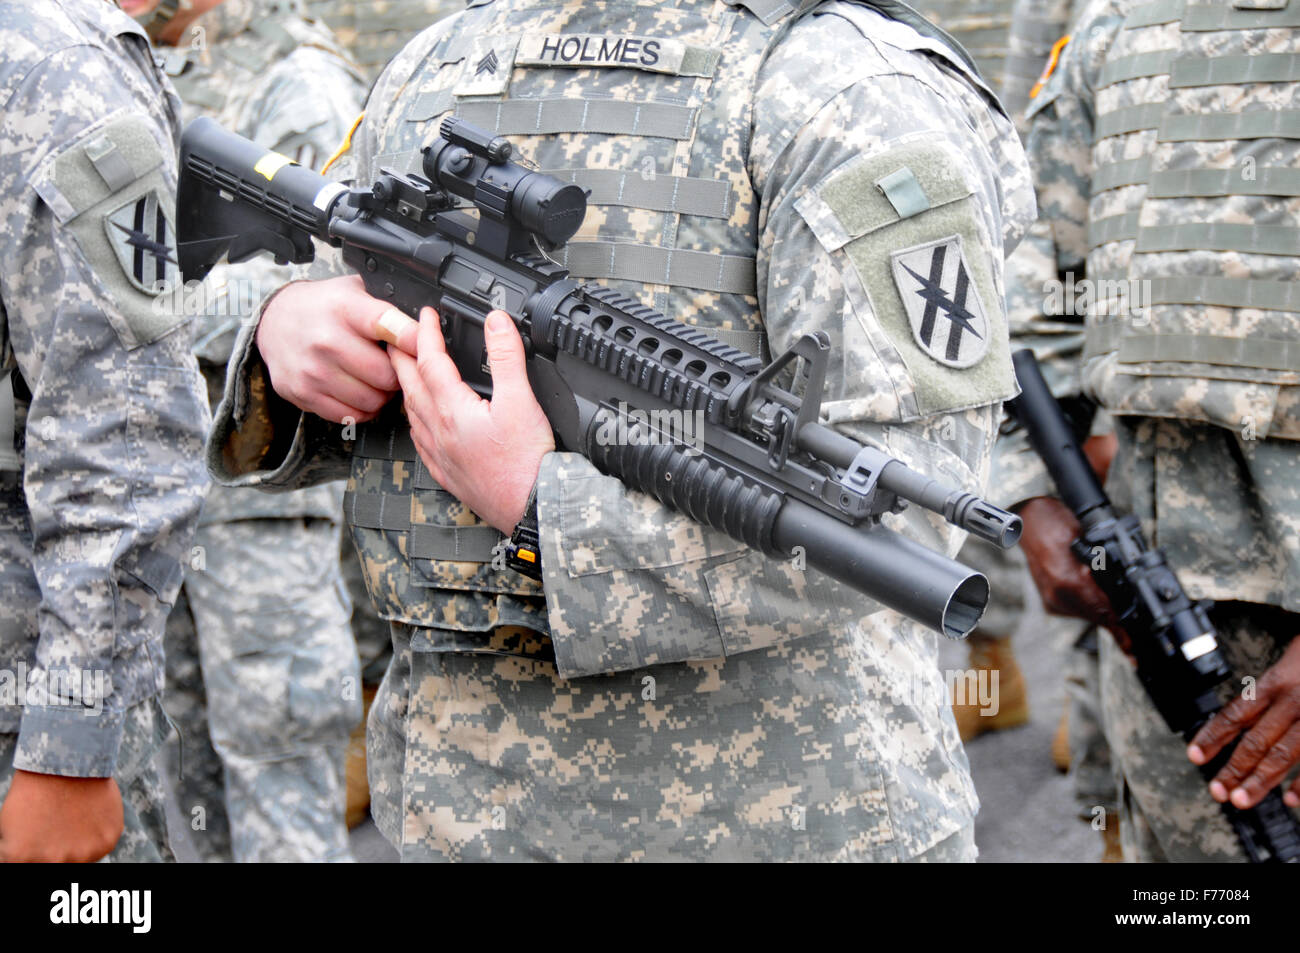 US Army soldato con fucile automatico con possibilità di casa in casa a combattere e uccidere in Afghanistan, Iraq, Iran ed è un padre con una figlia Foto Stock